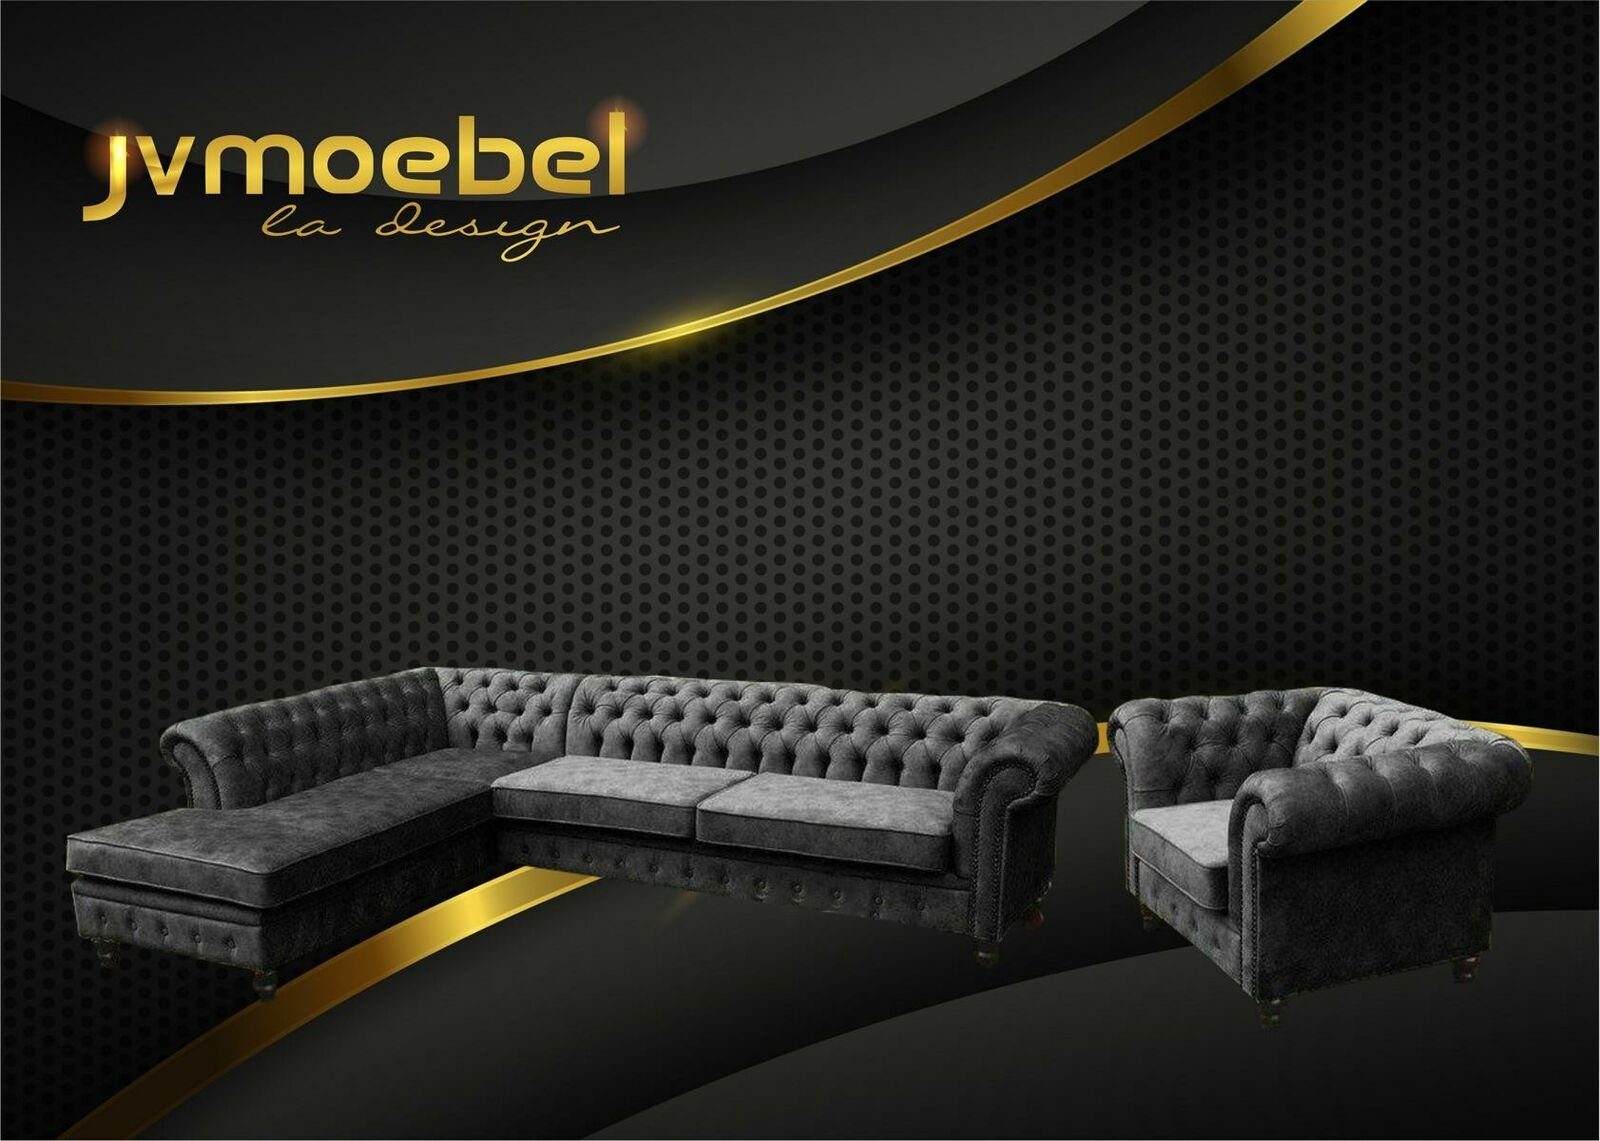 JVmoebel Ecksofa, Ecksofa Sofa Couch Polster Chesterfield Design Luxus Möbel Schwarz